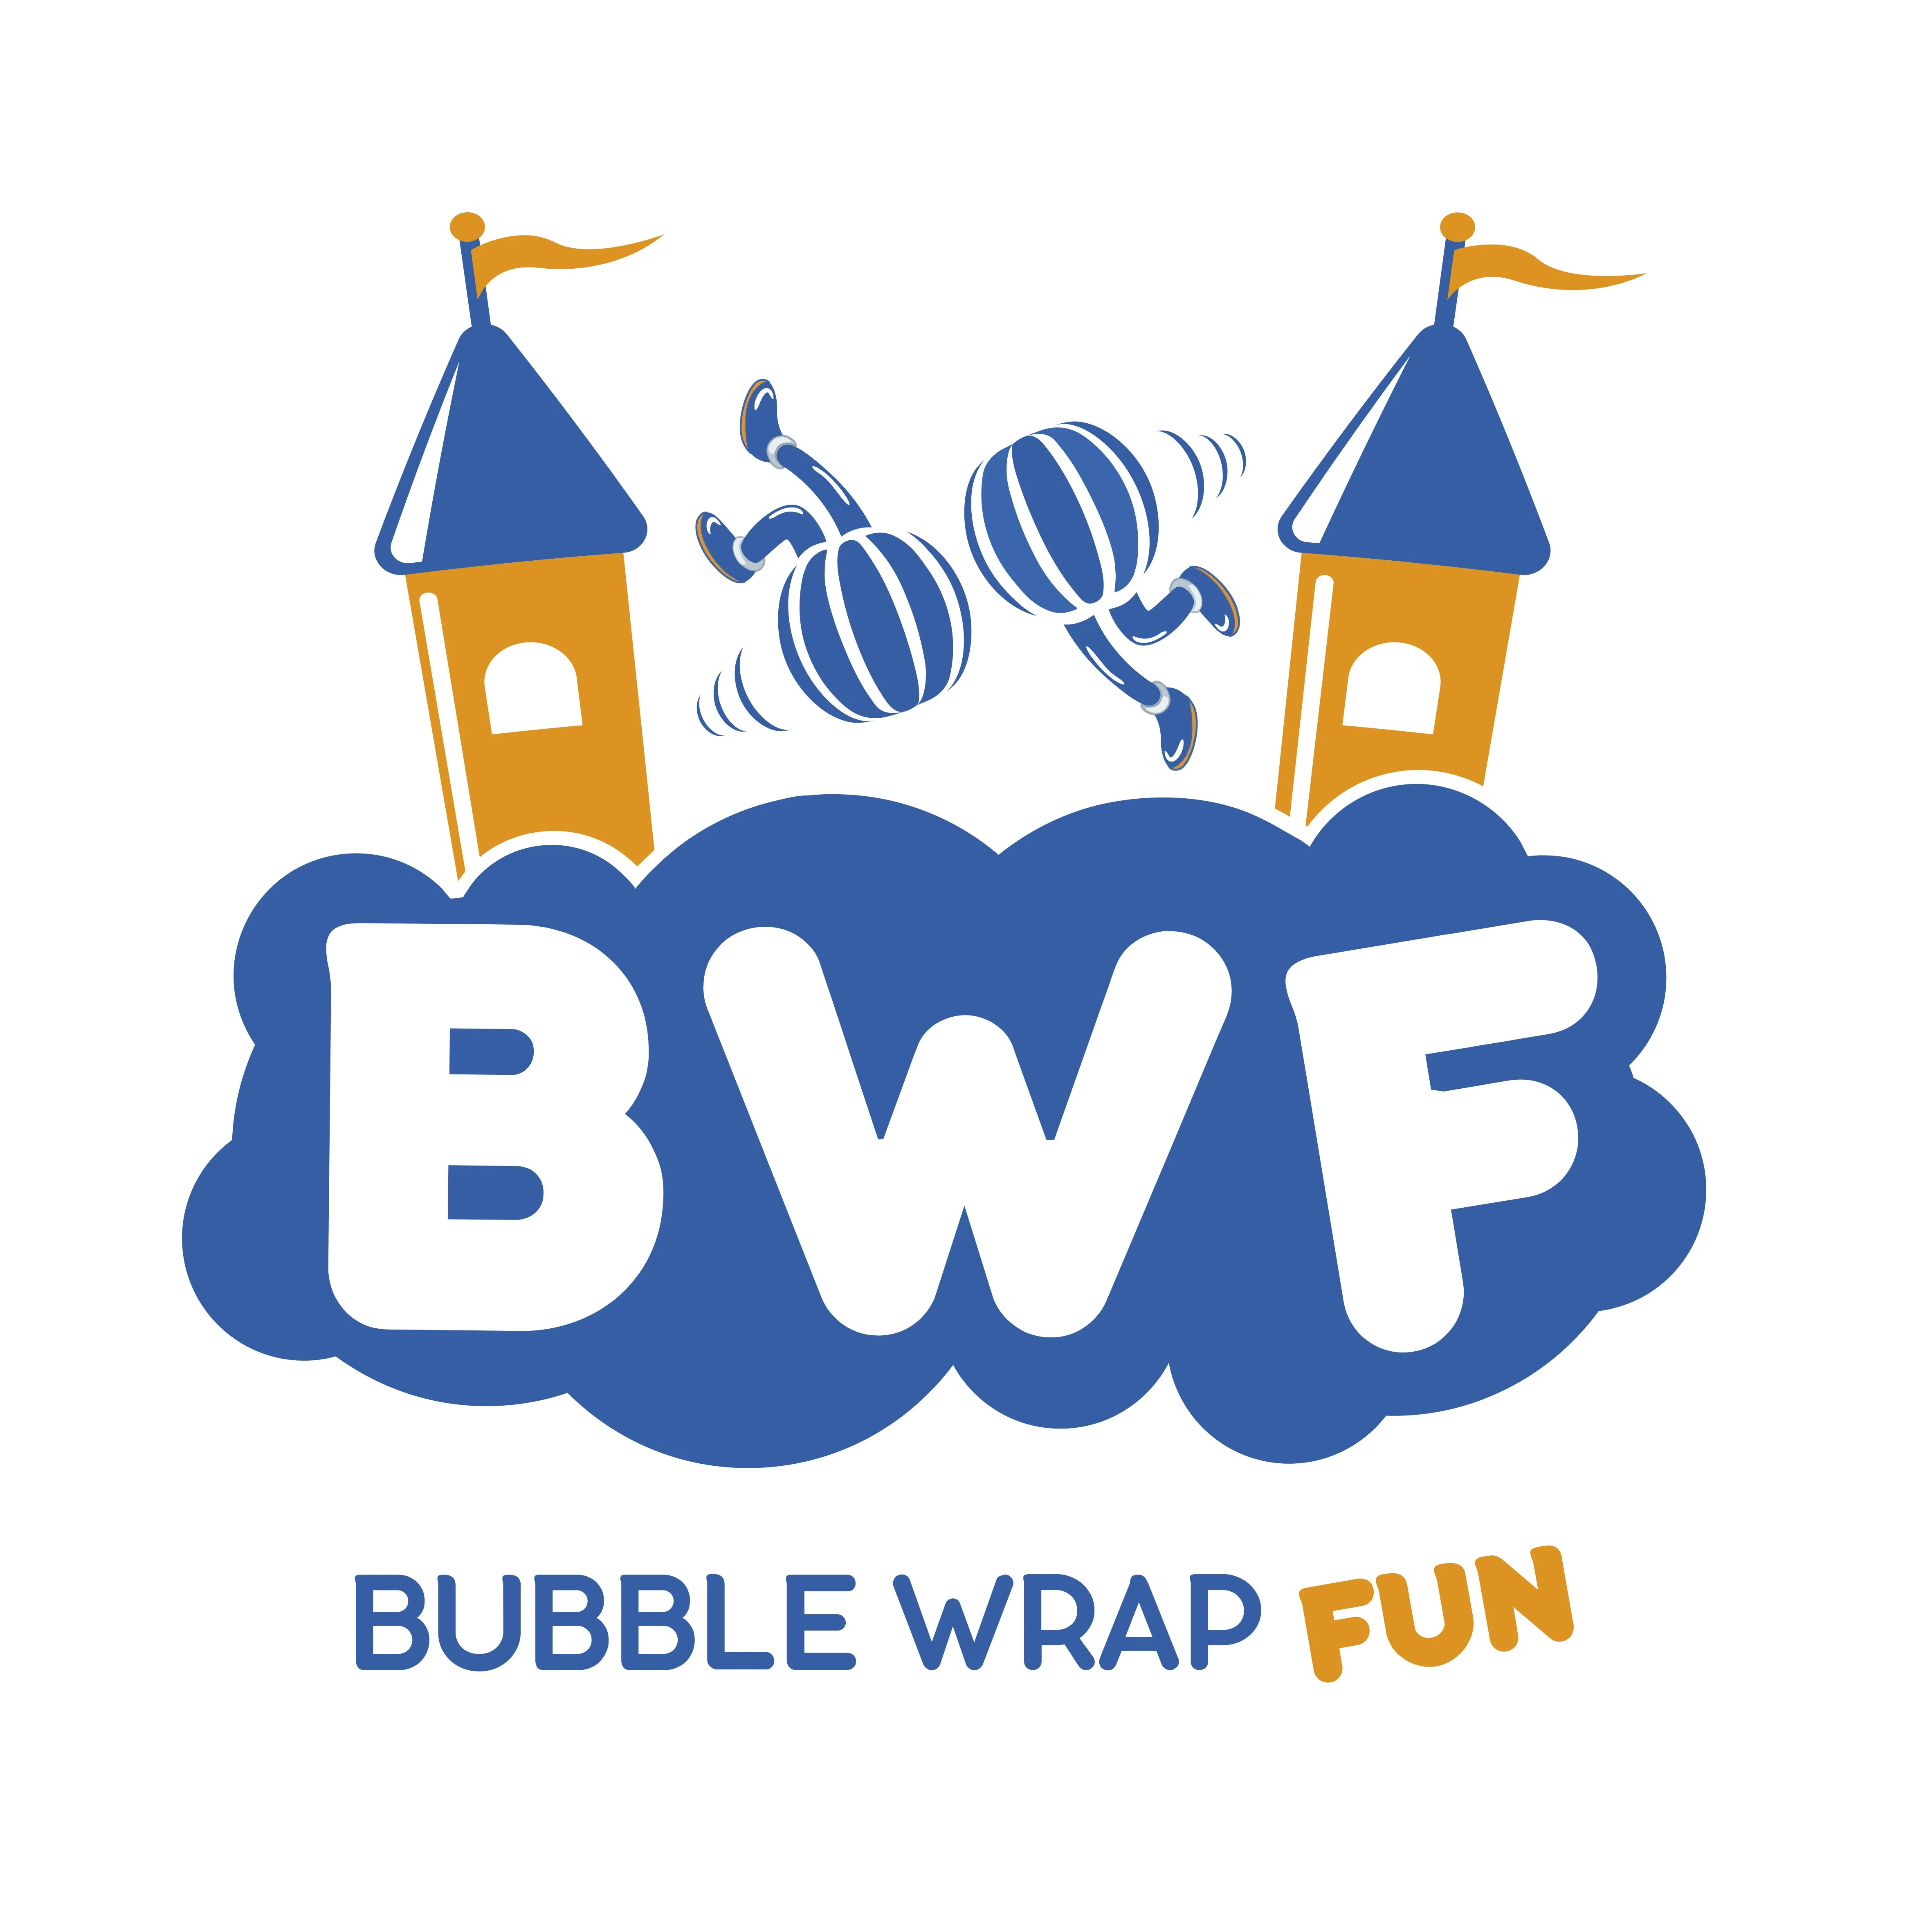 Bubble Wrap Fun